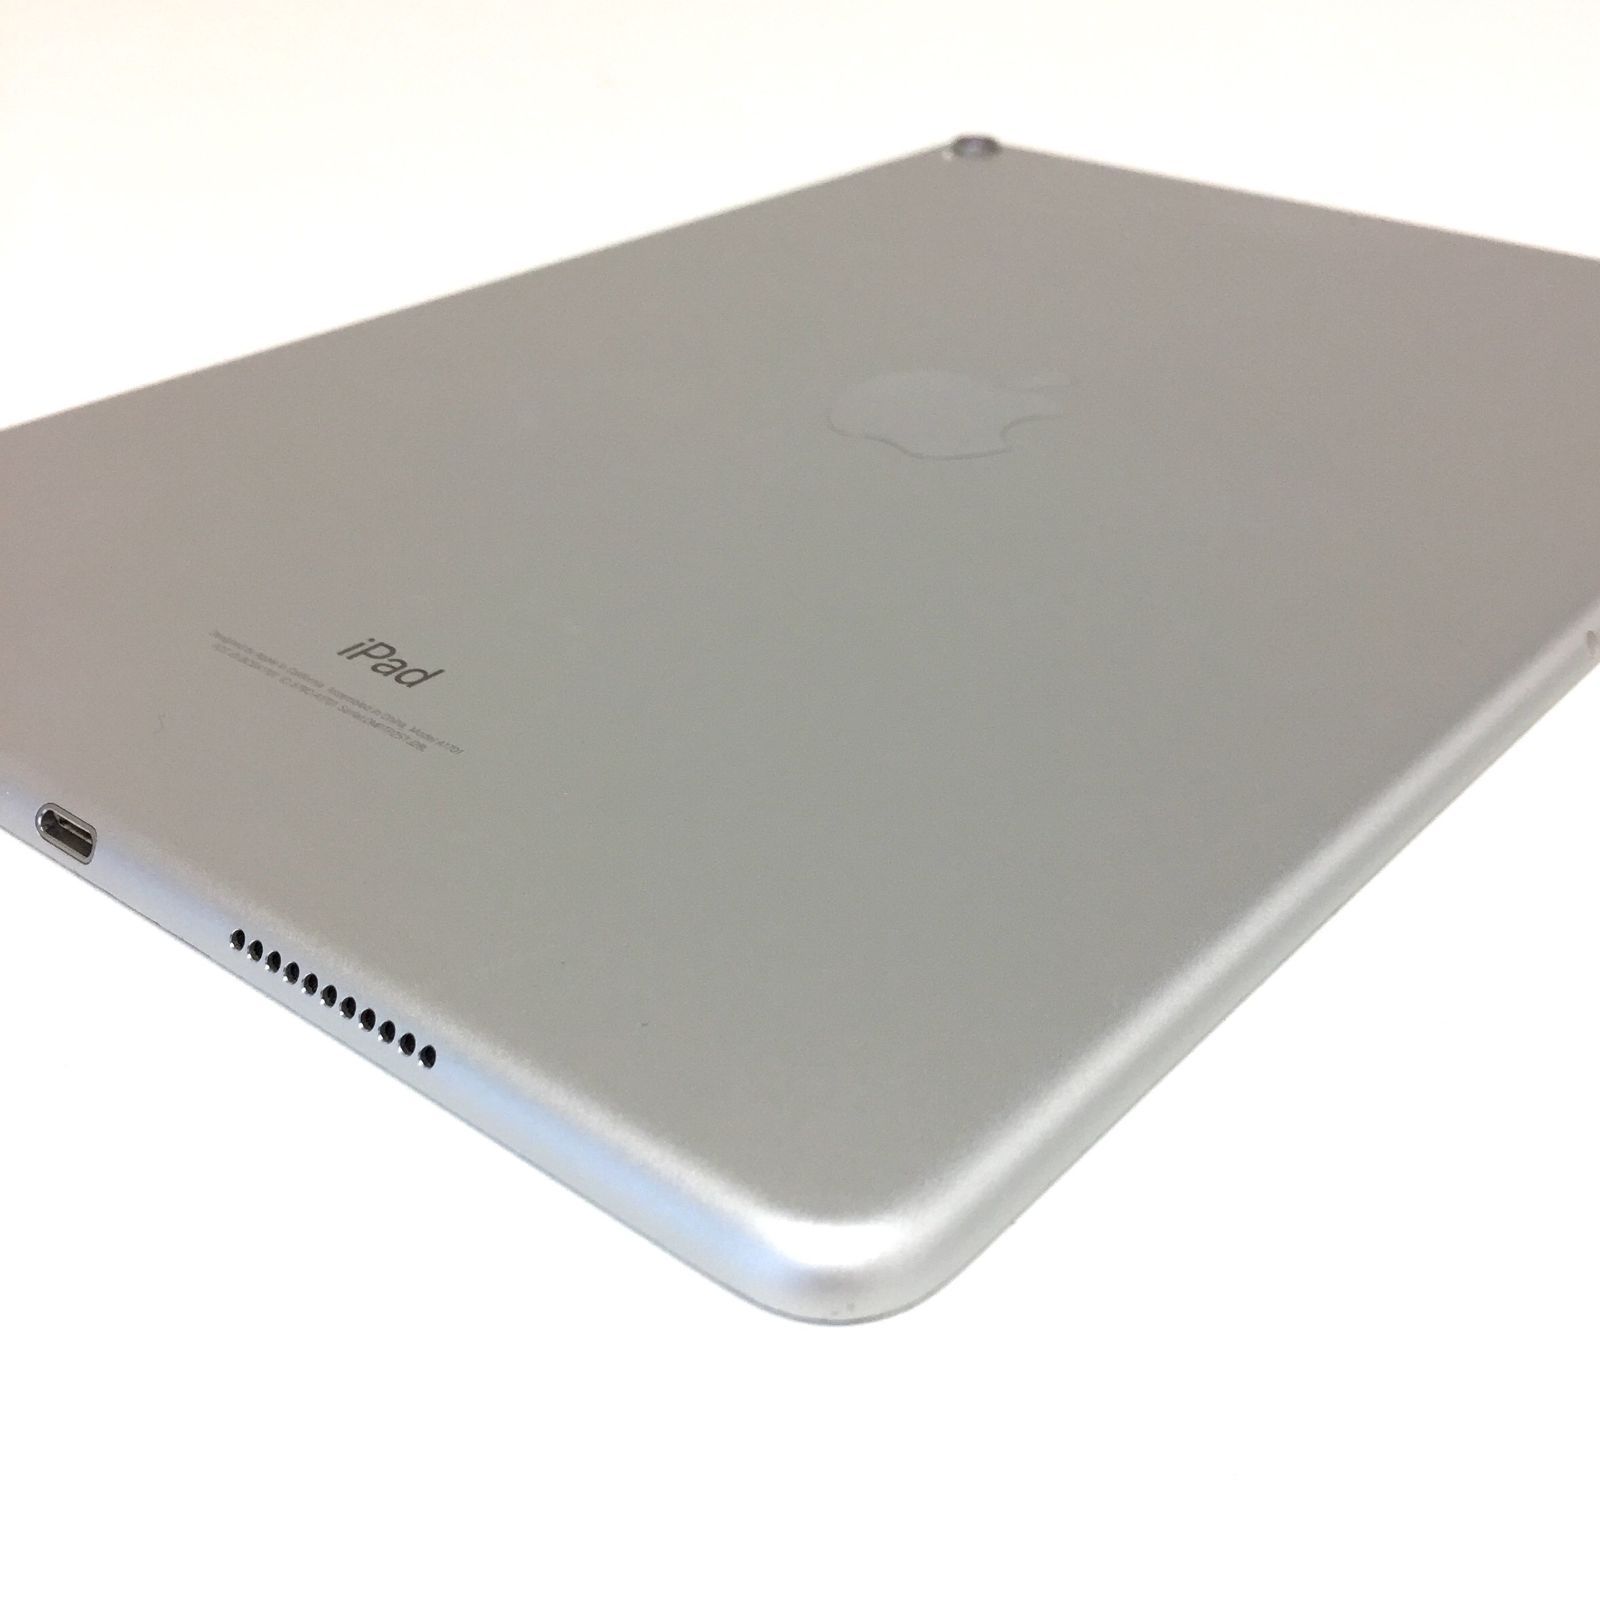 θ【ジャンク】Apple iPad Pro 10.5インチ Wi-Fi 64GB